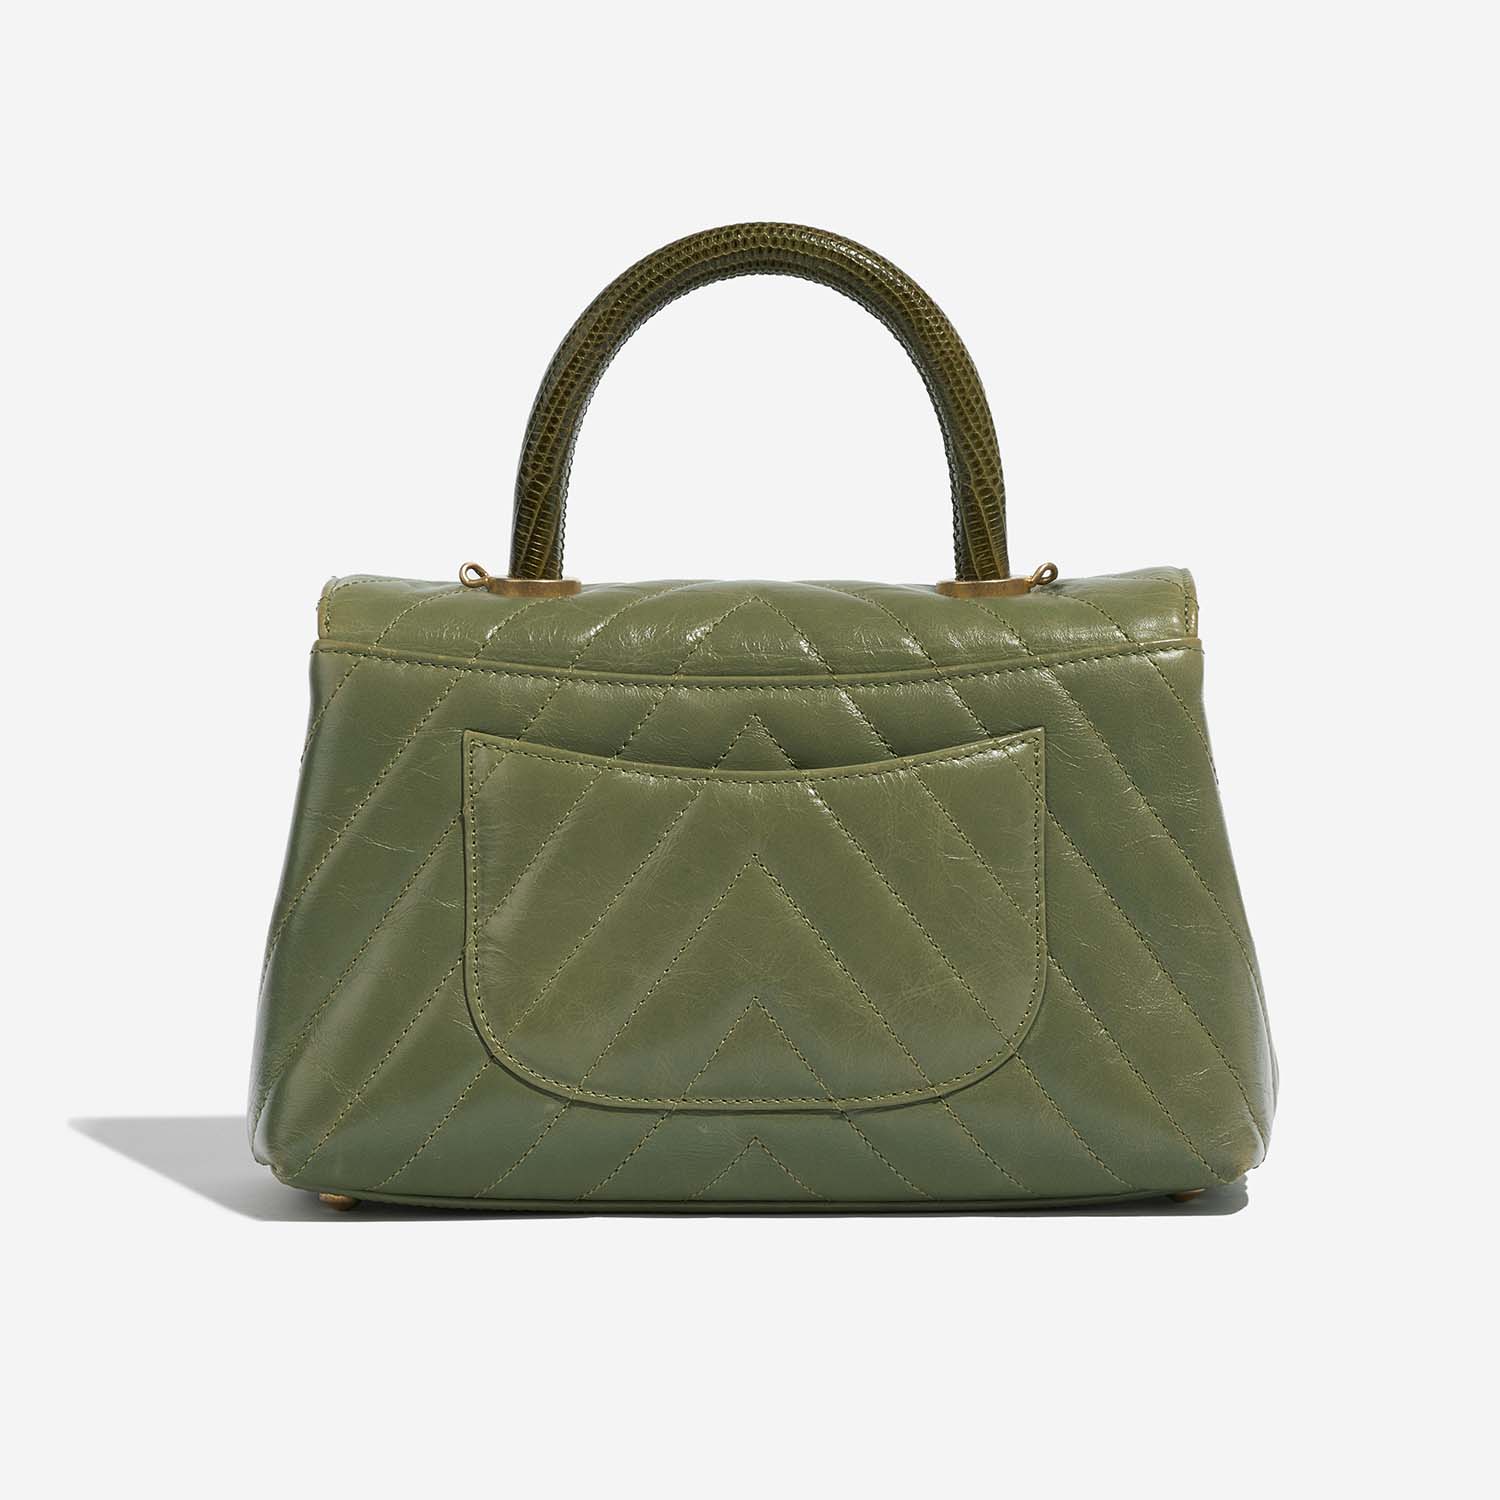 Chanel TimelessHandle Small Green Back | Verkaufen Sie Ihre Designer-Tasche auf Saclab.com